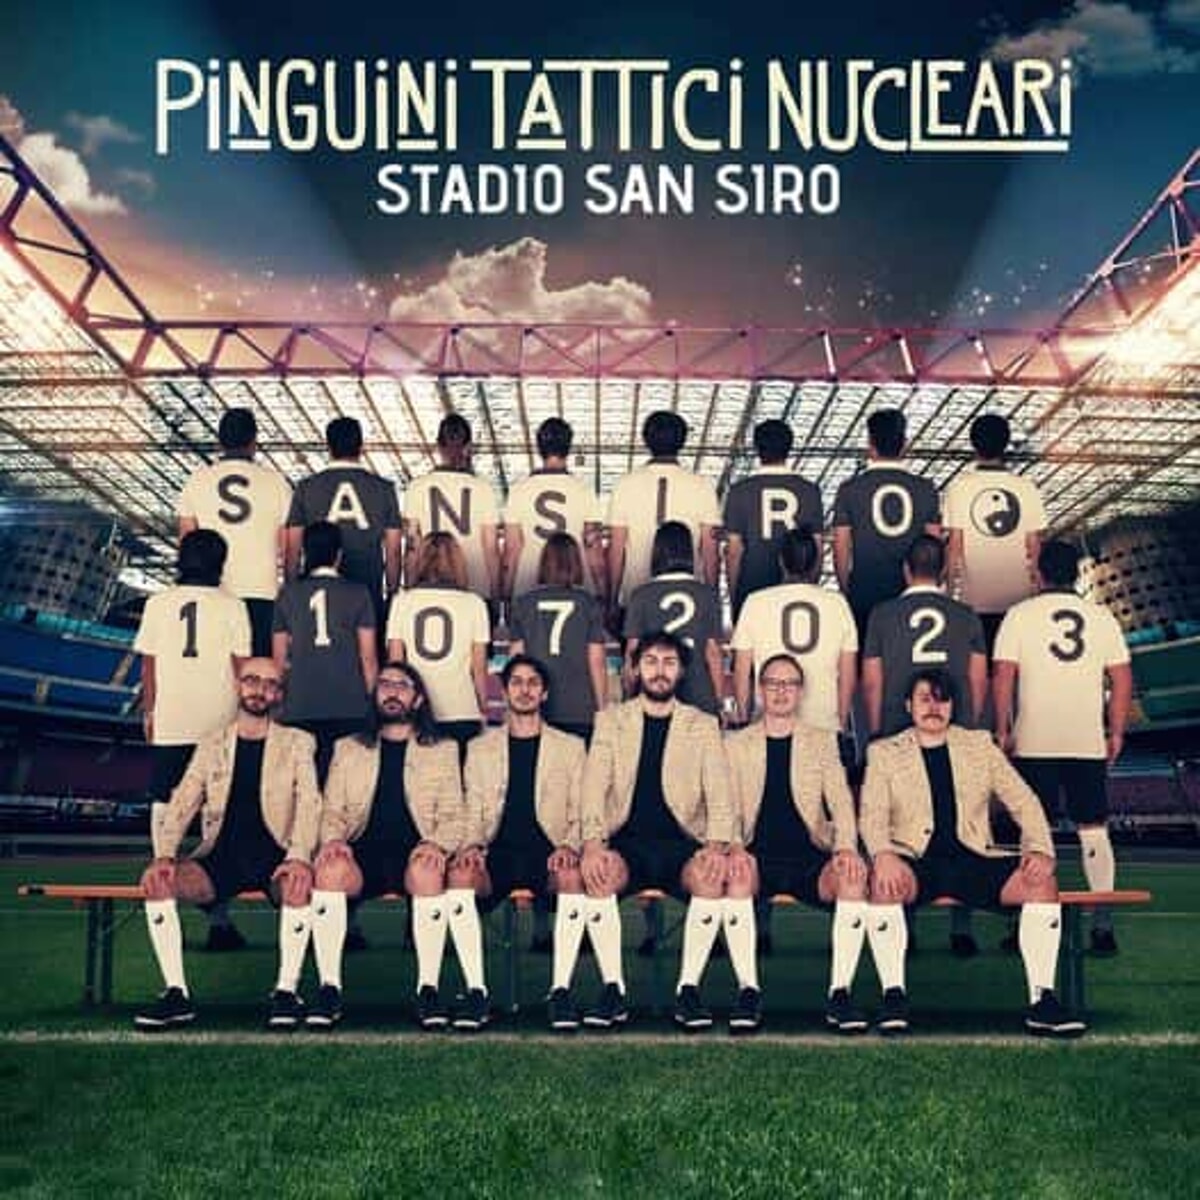 I Pinguini tattici nucleari suoneranno a San Siro